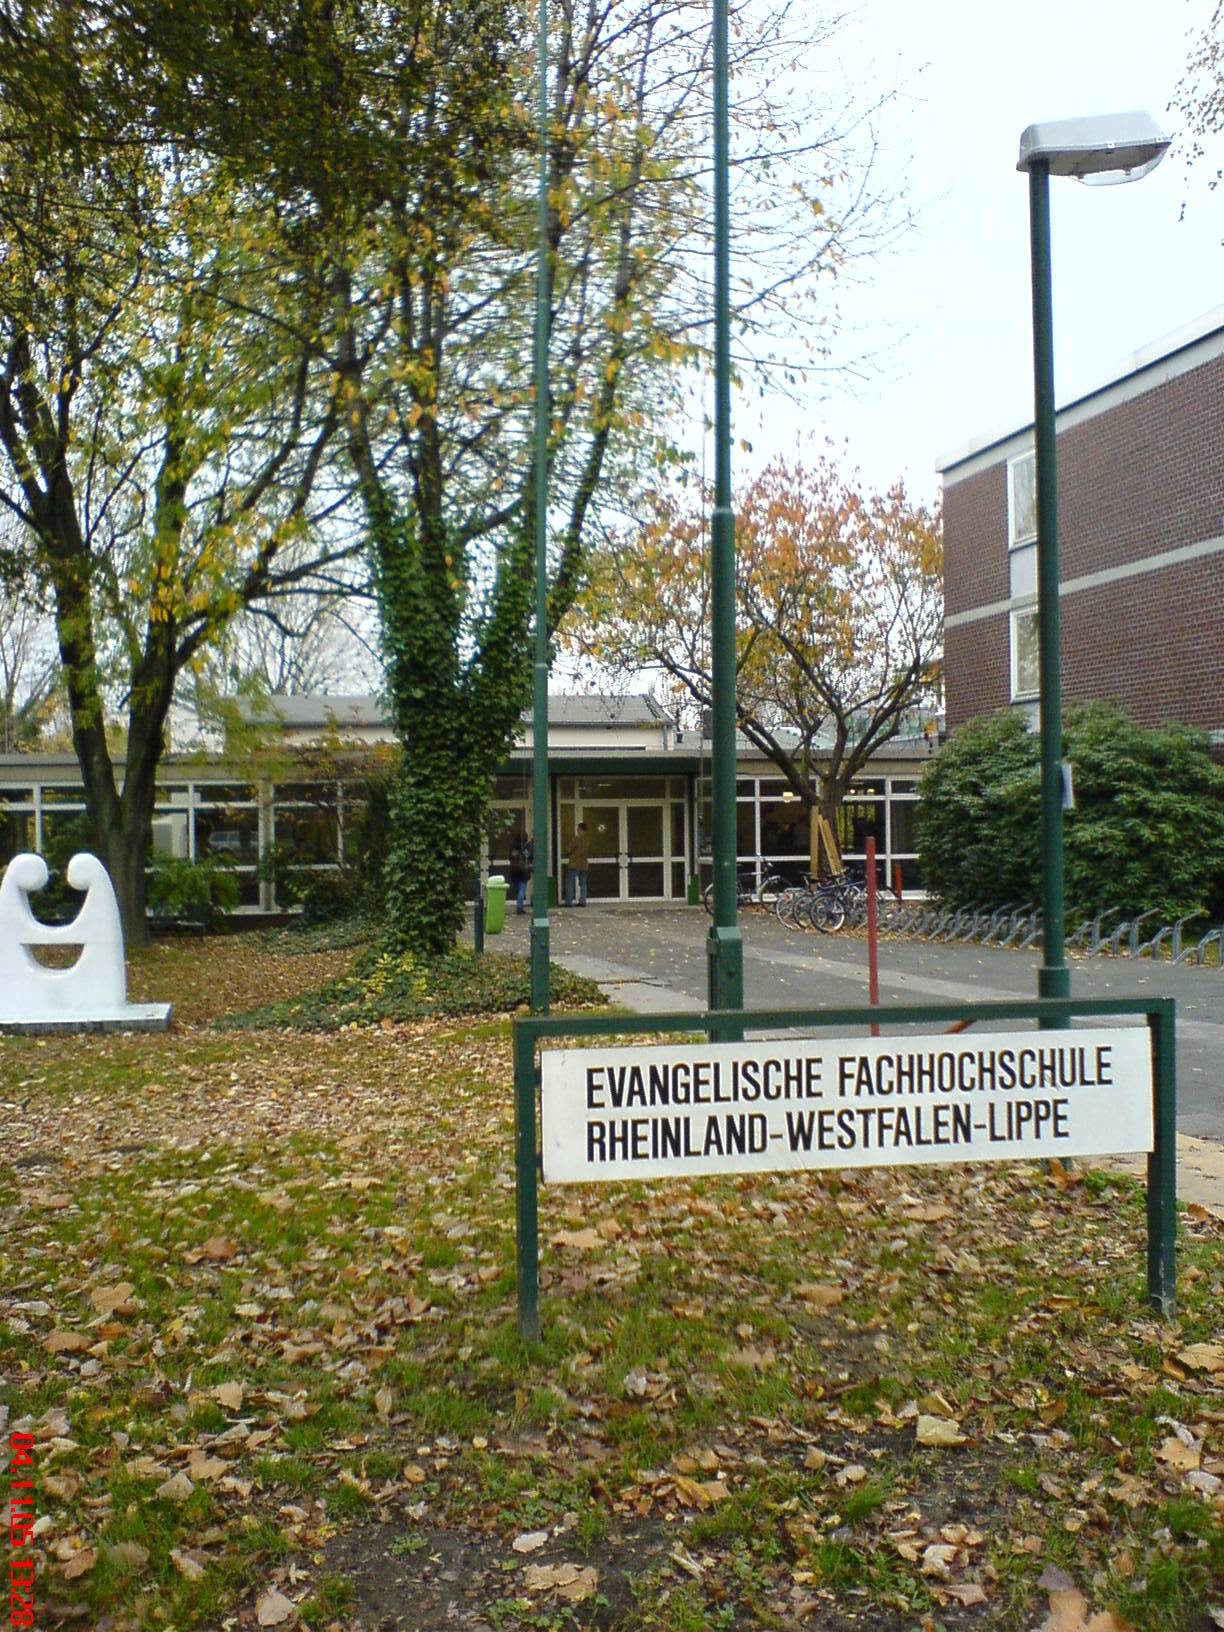 萊茵蘭-威斯伐倫-利珀新教套用技術大學